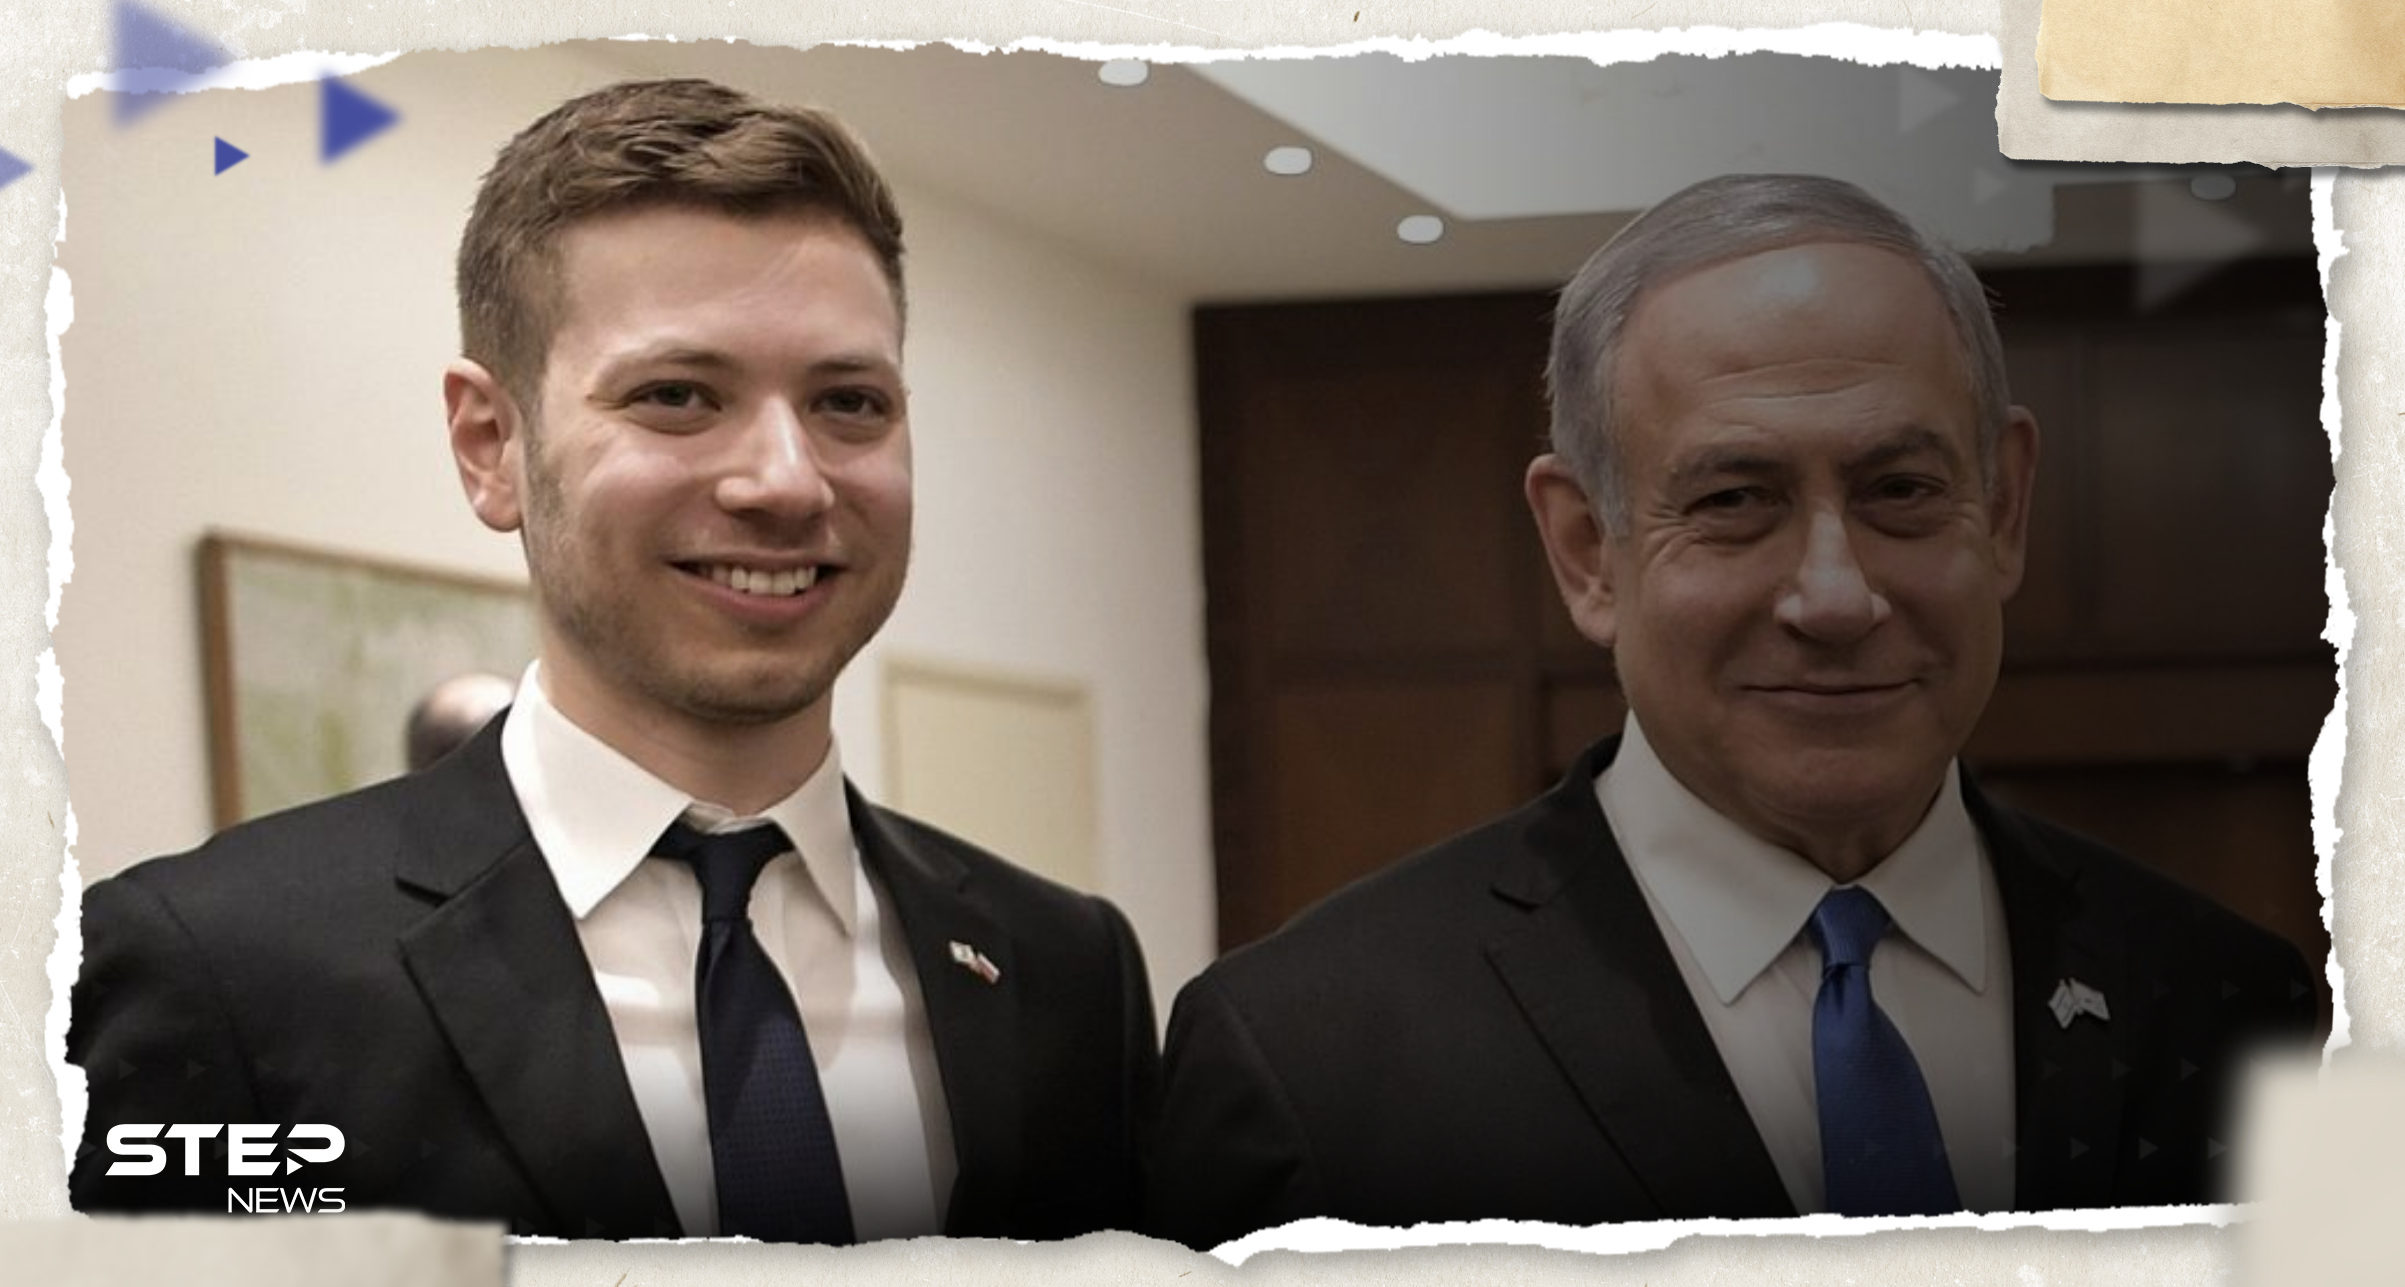 يائير نتنياهو يشعل جدلاً بحديثه عن الجيش الإسرائيلي ومنظمة "جنود الاحتياط" ترد عليه